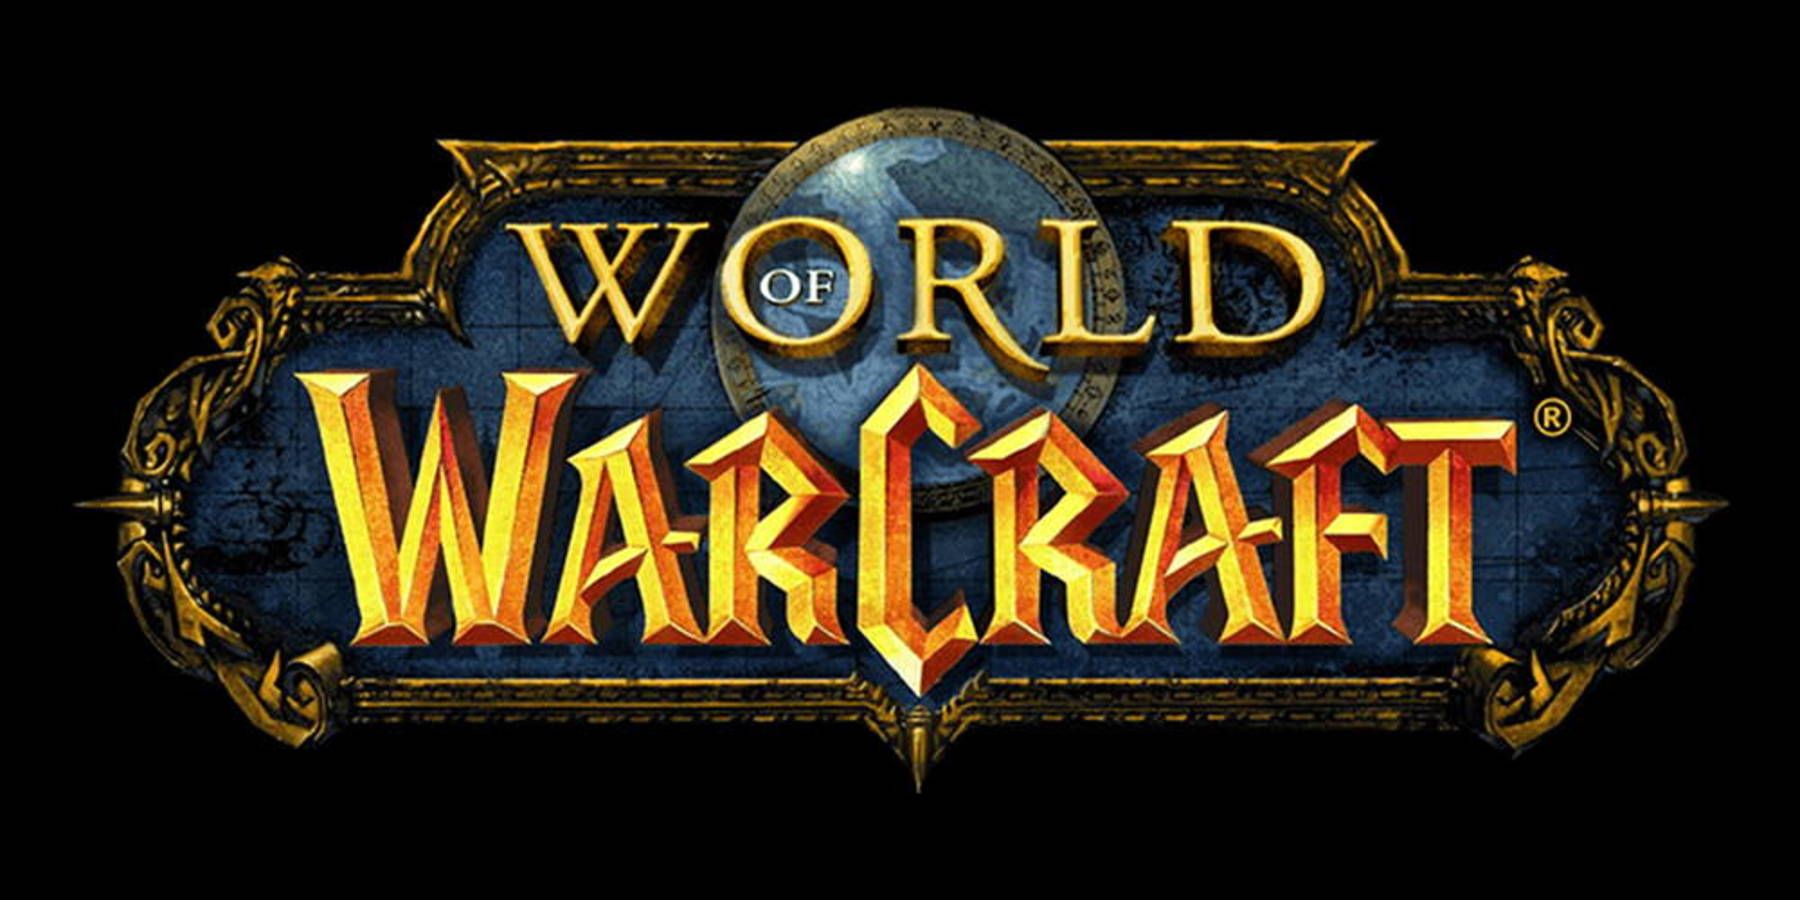 Warcraft Mobile Game enligt uppgift avbröts